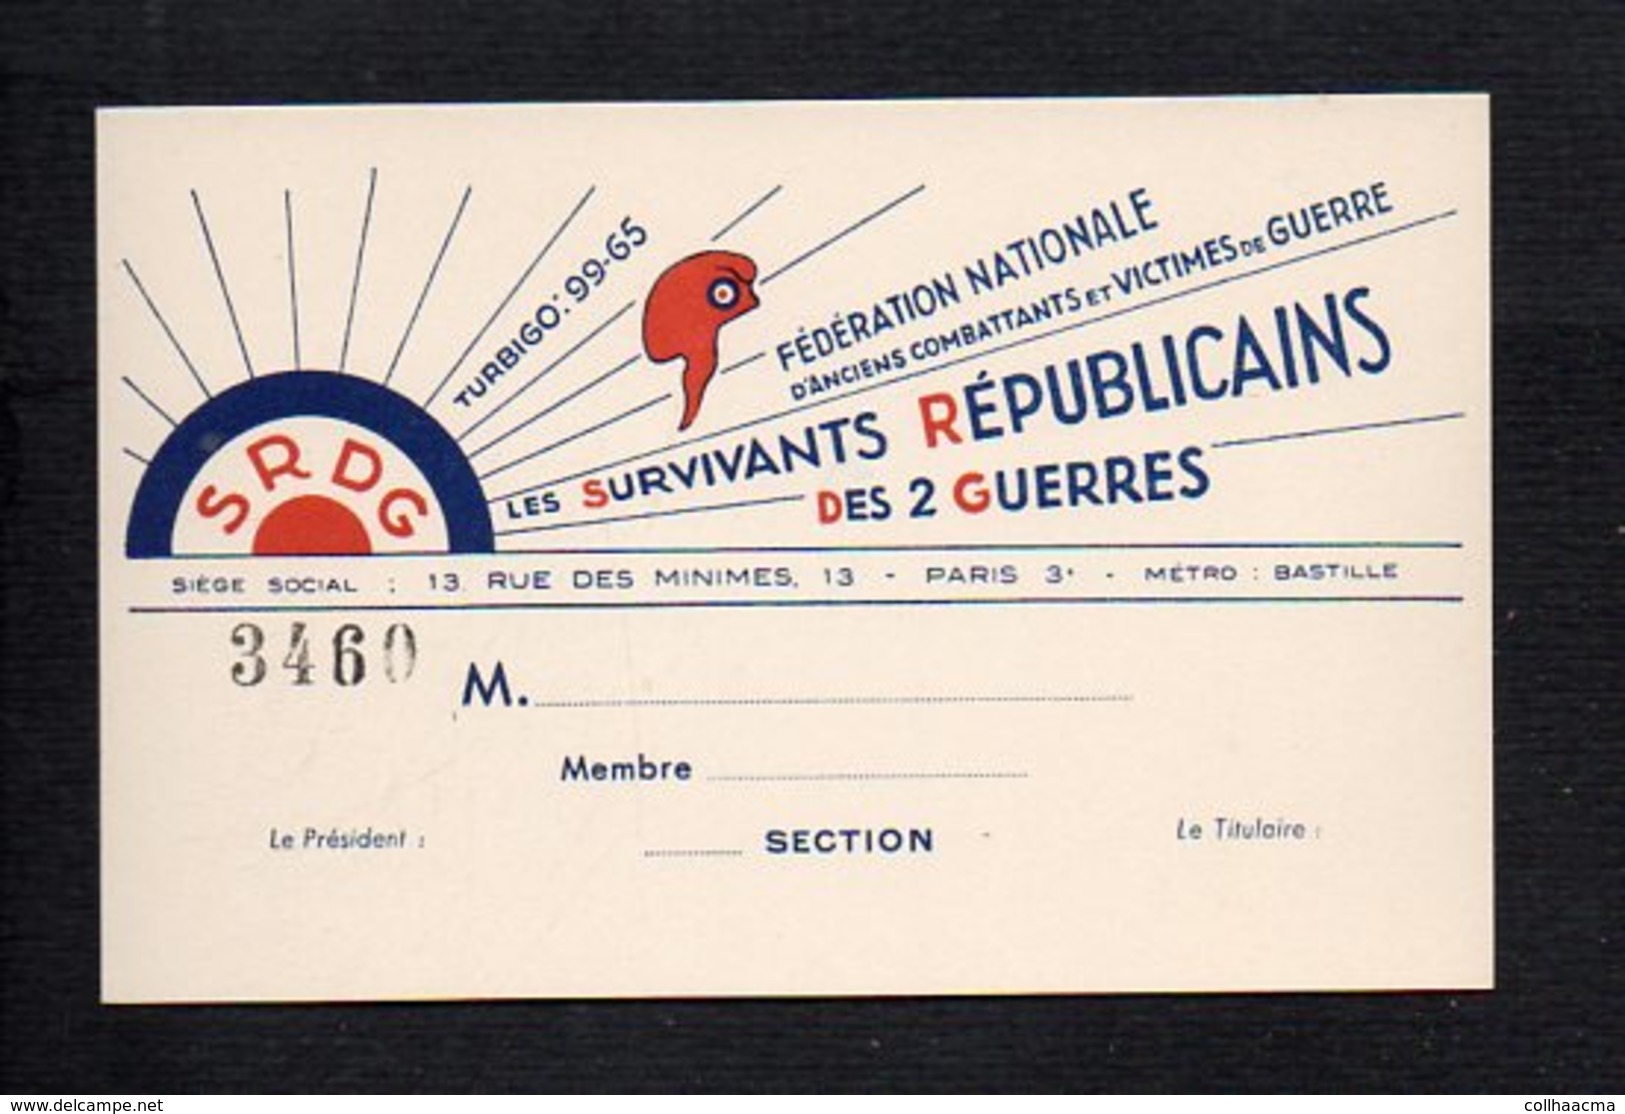 Carte De Visite Ou Membre (vierge) De La S.R.D.G "Les Survivants Républicains Des 2 Guerres" Anciens Combattants Paris 3 - Cartes De Visite